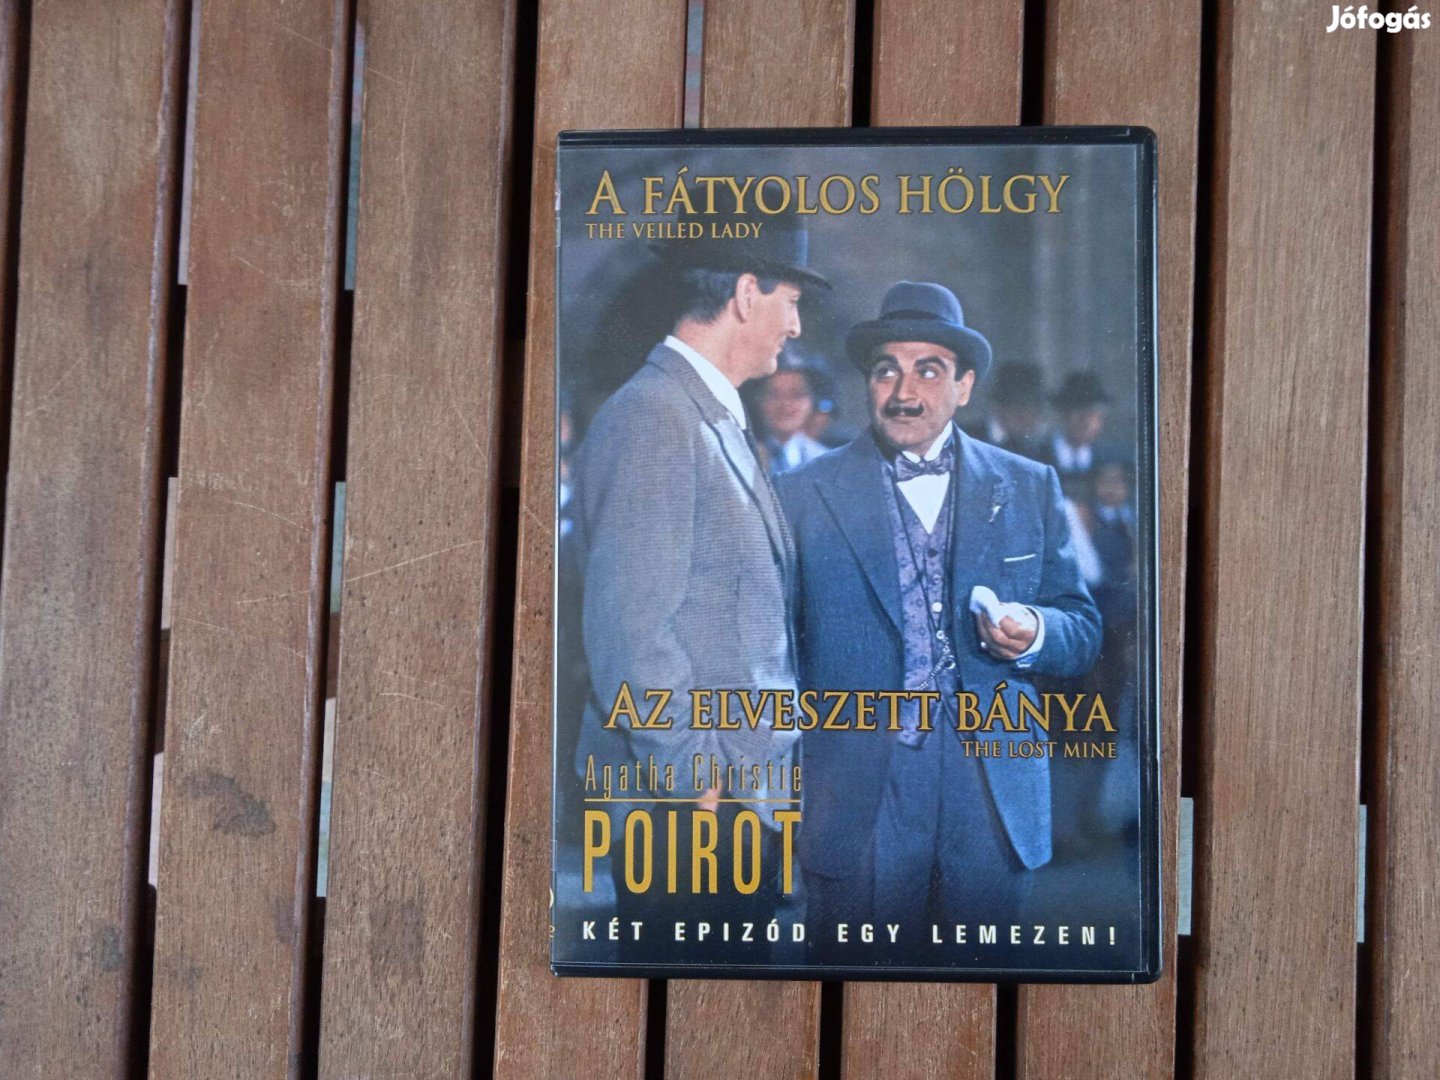 Poirot: A fátyolos hölgy / Az elveszett bánya - eredeti DVD